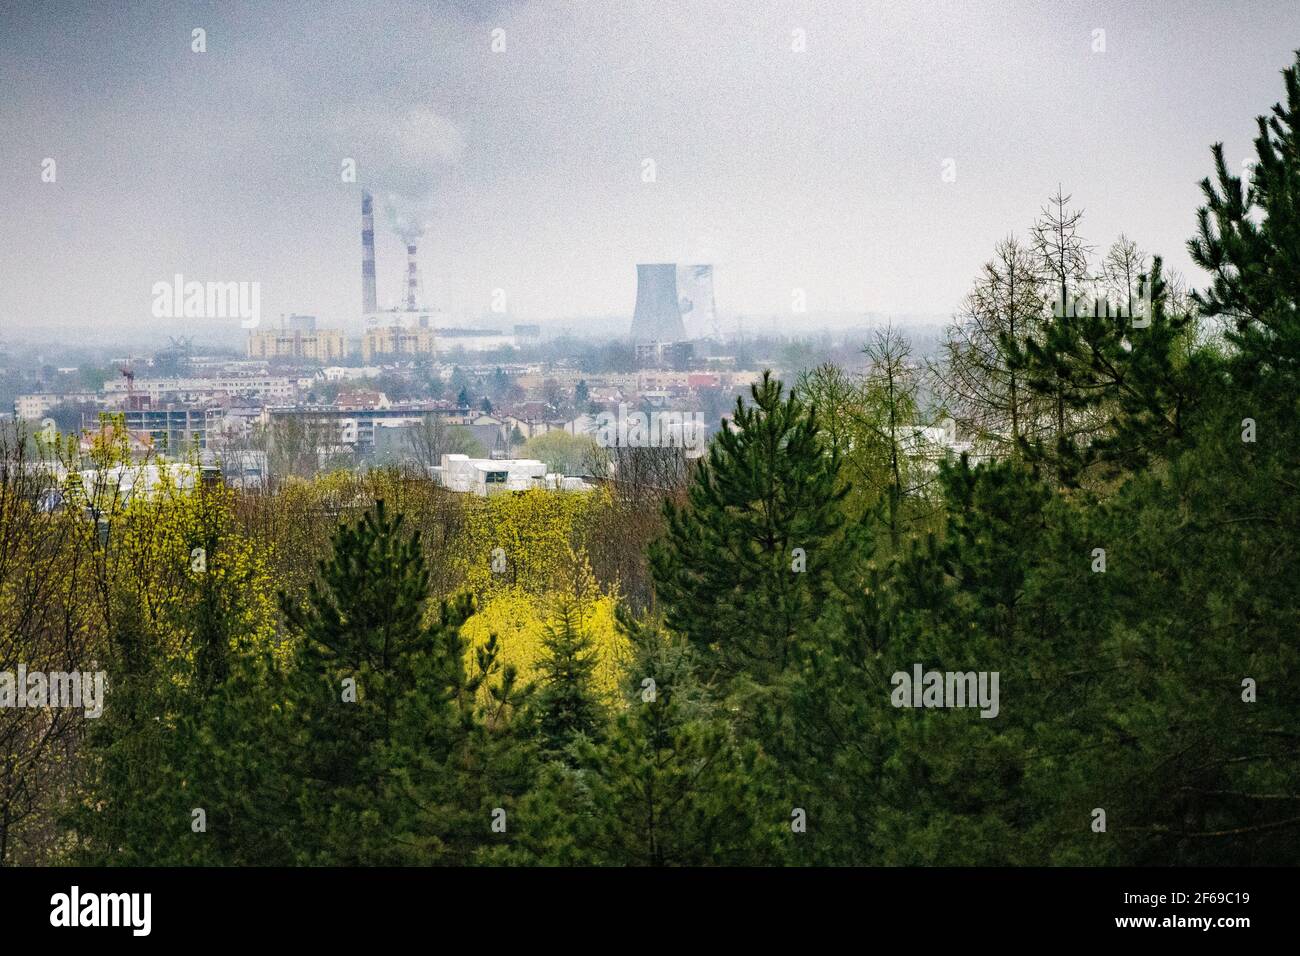 Parte industrial de la ciudad de Cracovia, Polonia con centrales eléctricas y chimeneas de fábricas, abetos, concepto ambiental, contaminación Foto de stock